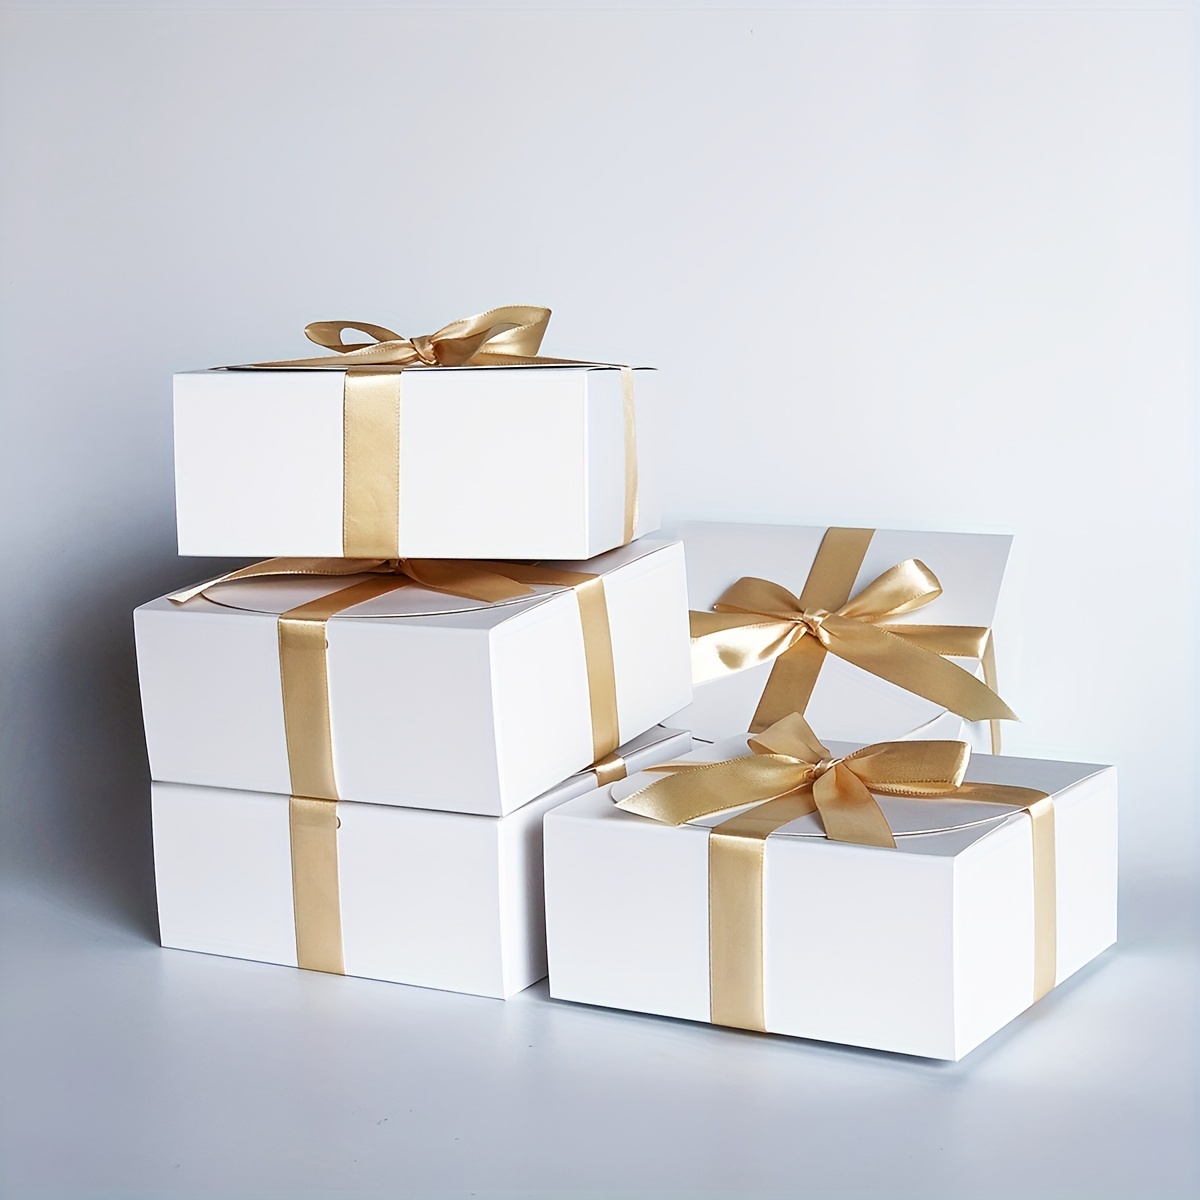 Embalaje de regalo, cajas pequeñas para regalos, cinta exquisita para  bodas, Navidad, cumpleaños, día de San Valentín (rojo HM2330406)